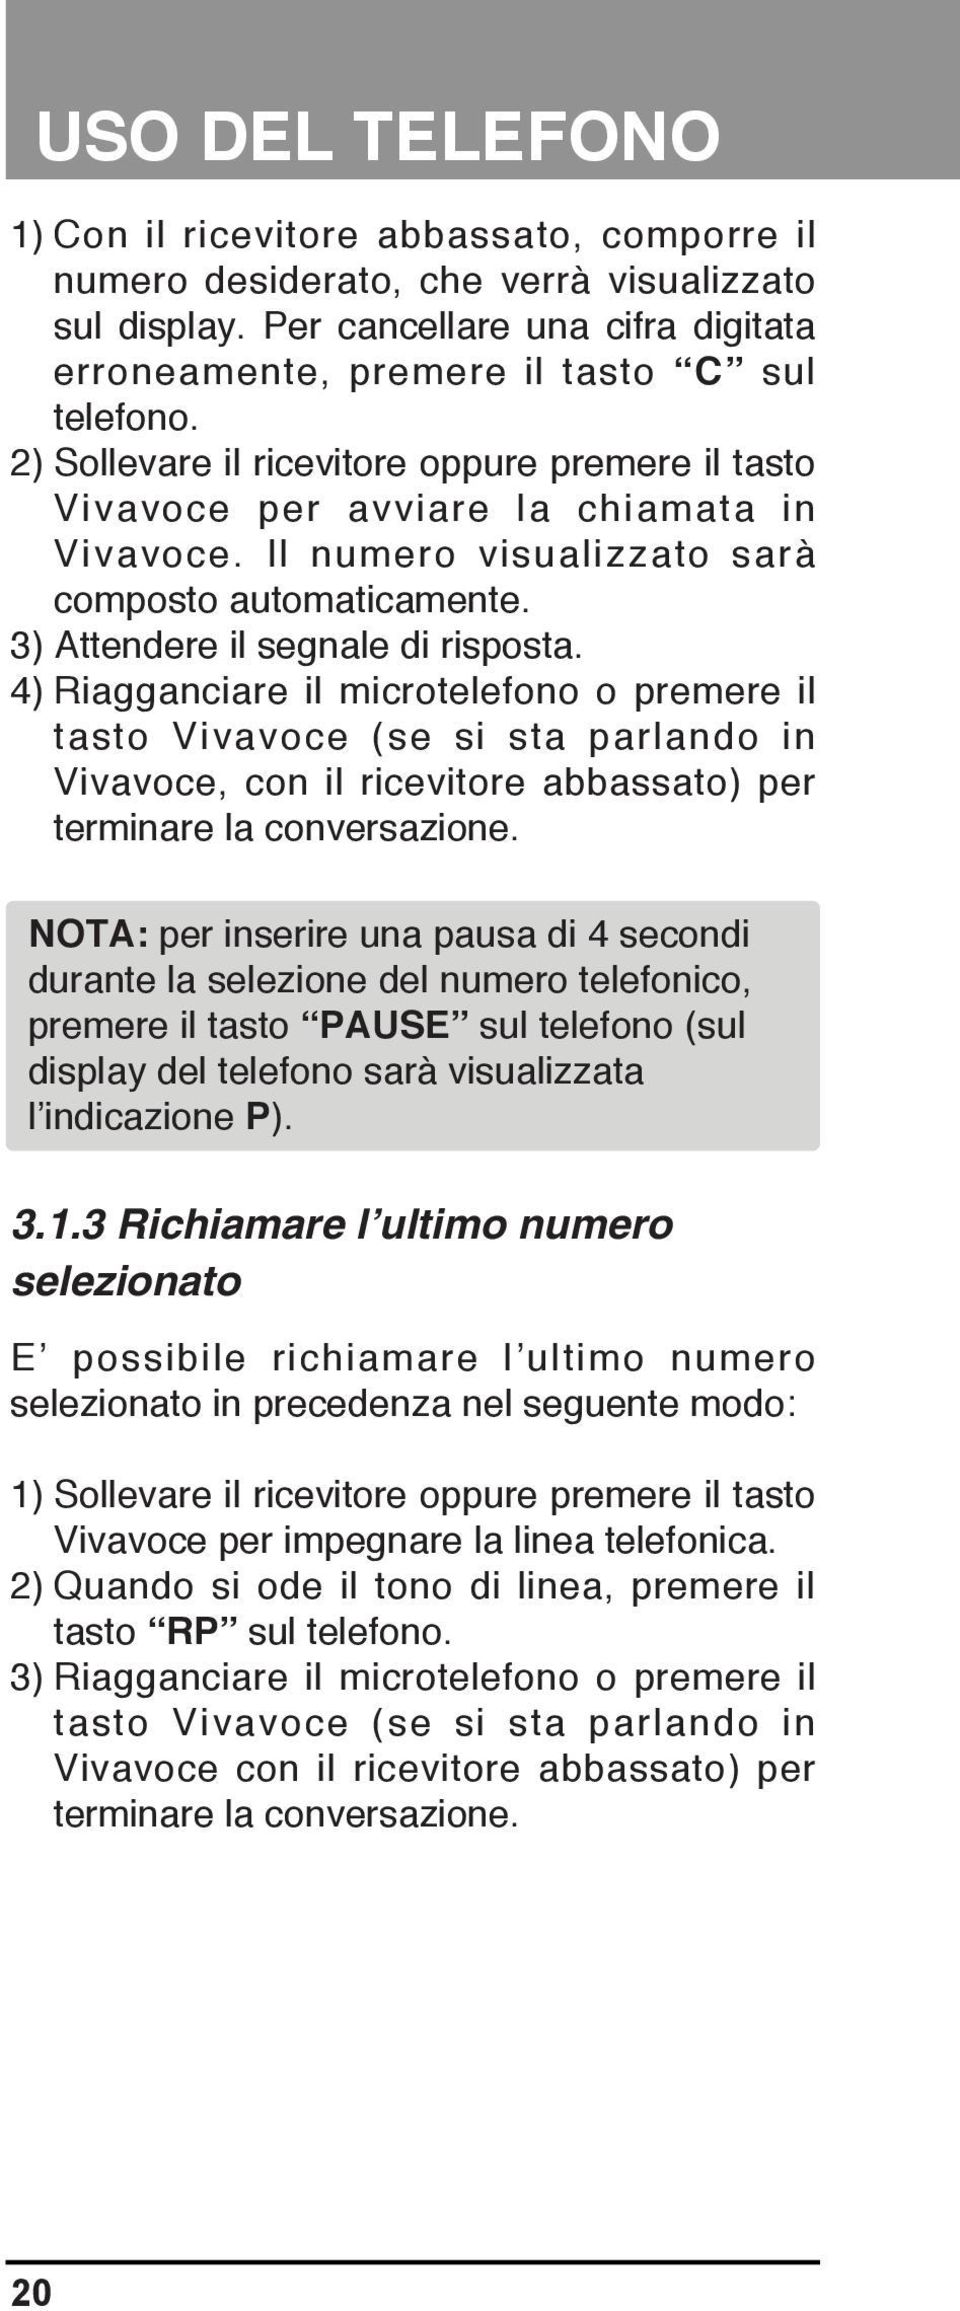 4) Riagganciare il microtelefono o premere il tasto Vivavoce (se si sta parlando in Vivavoce, con il ricevitore abbassato) per terminare la conversazione.